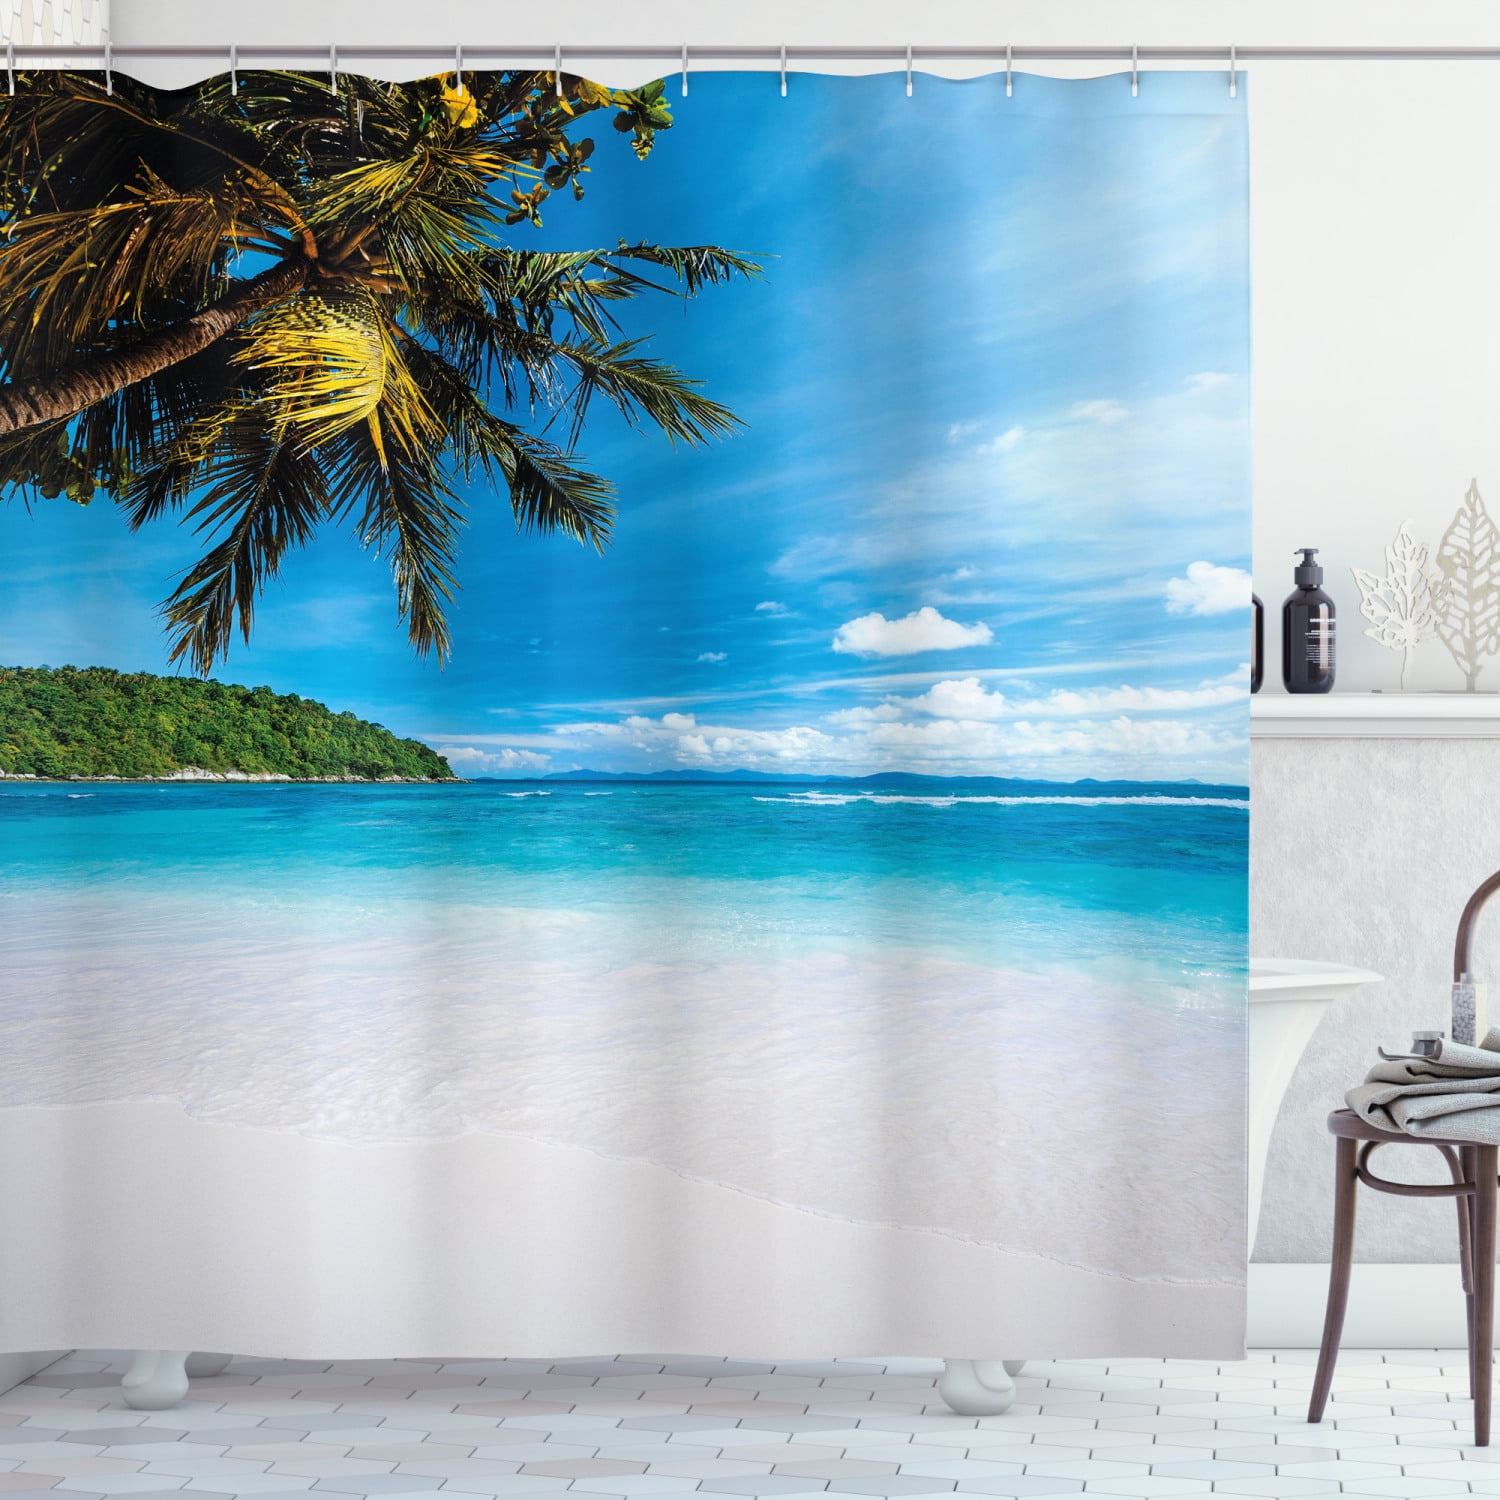 Fantastic Custom Tropical Beach Palm Trees Bathroom Shower Curtain 72x72 Inches 